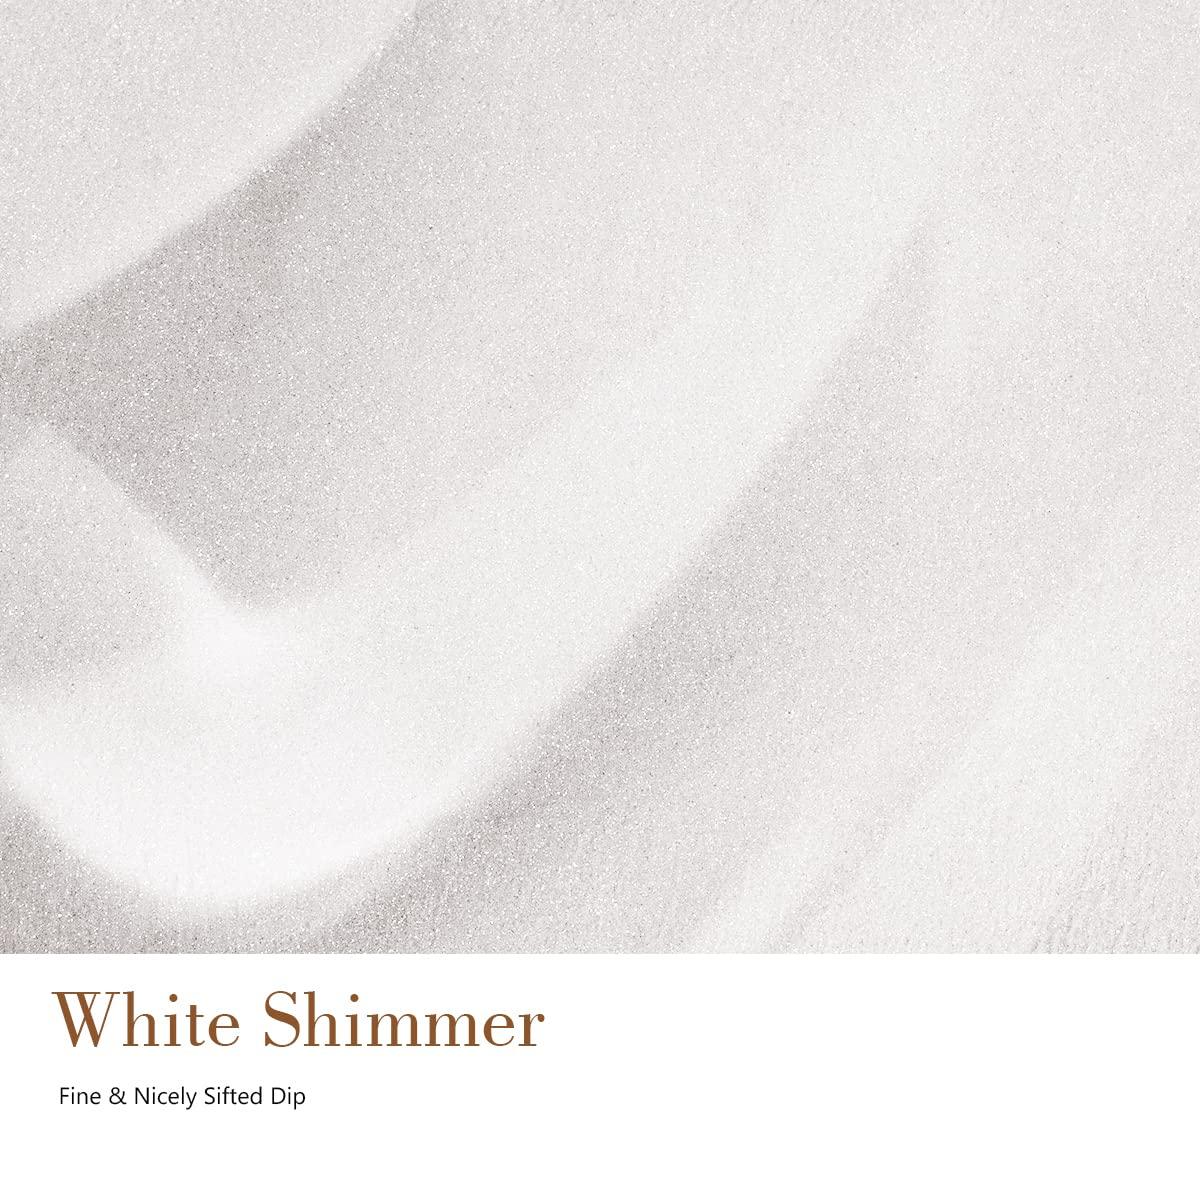 White shimmer